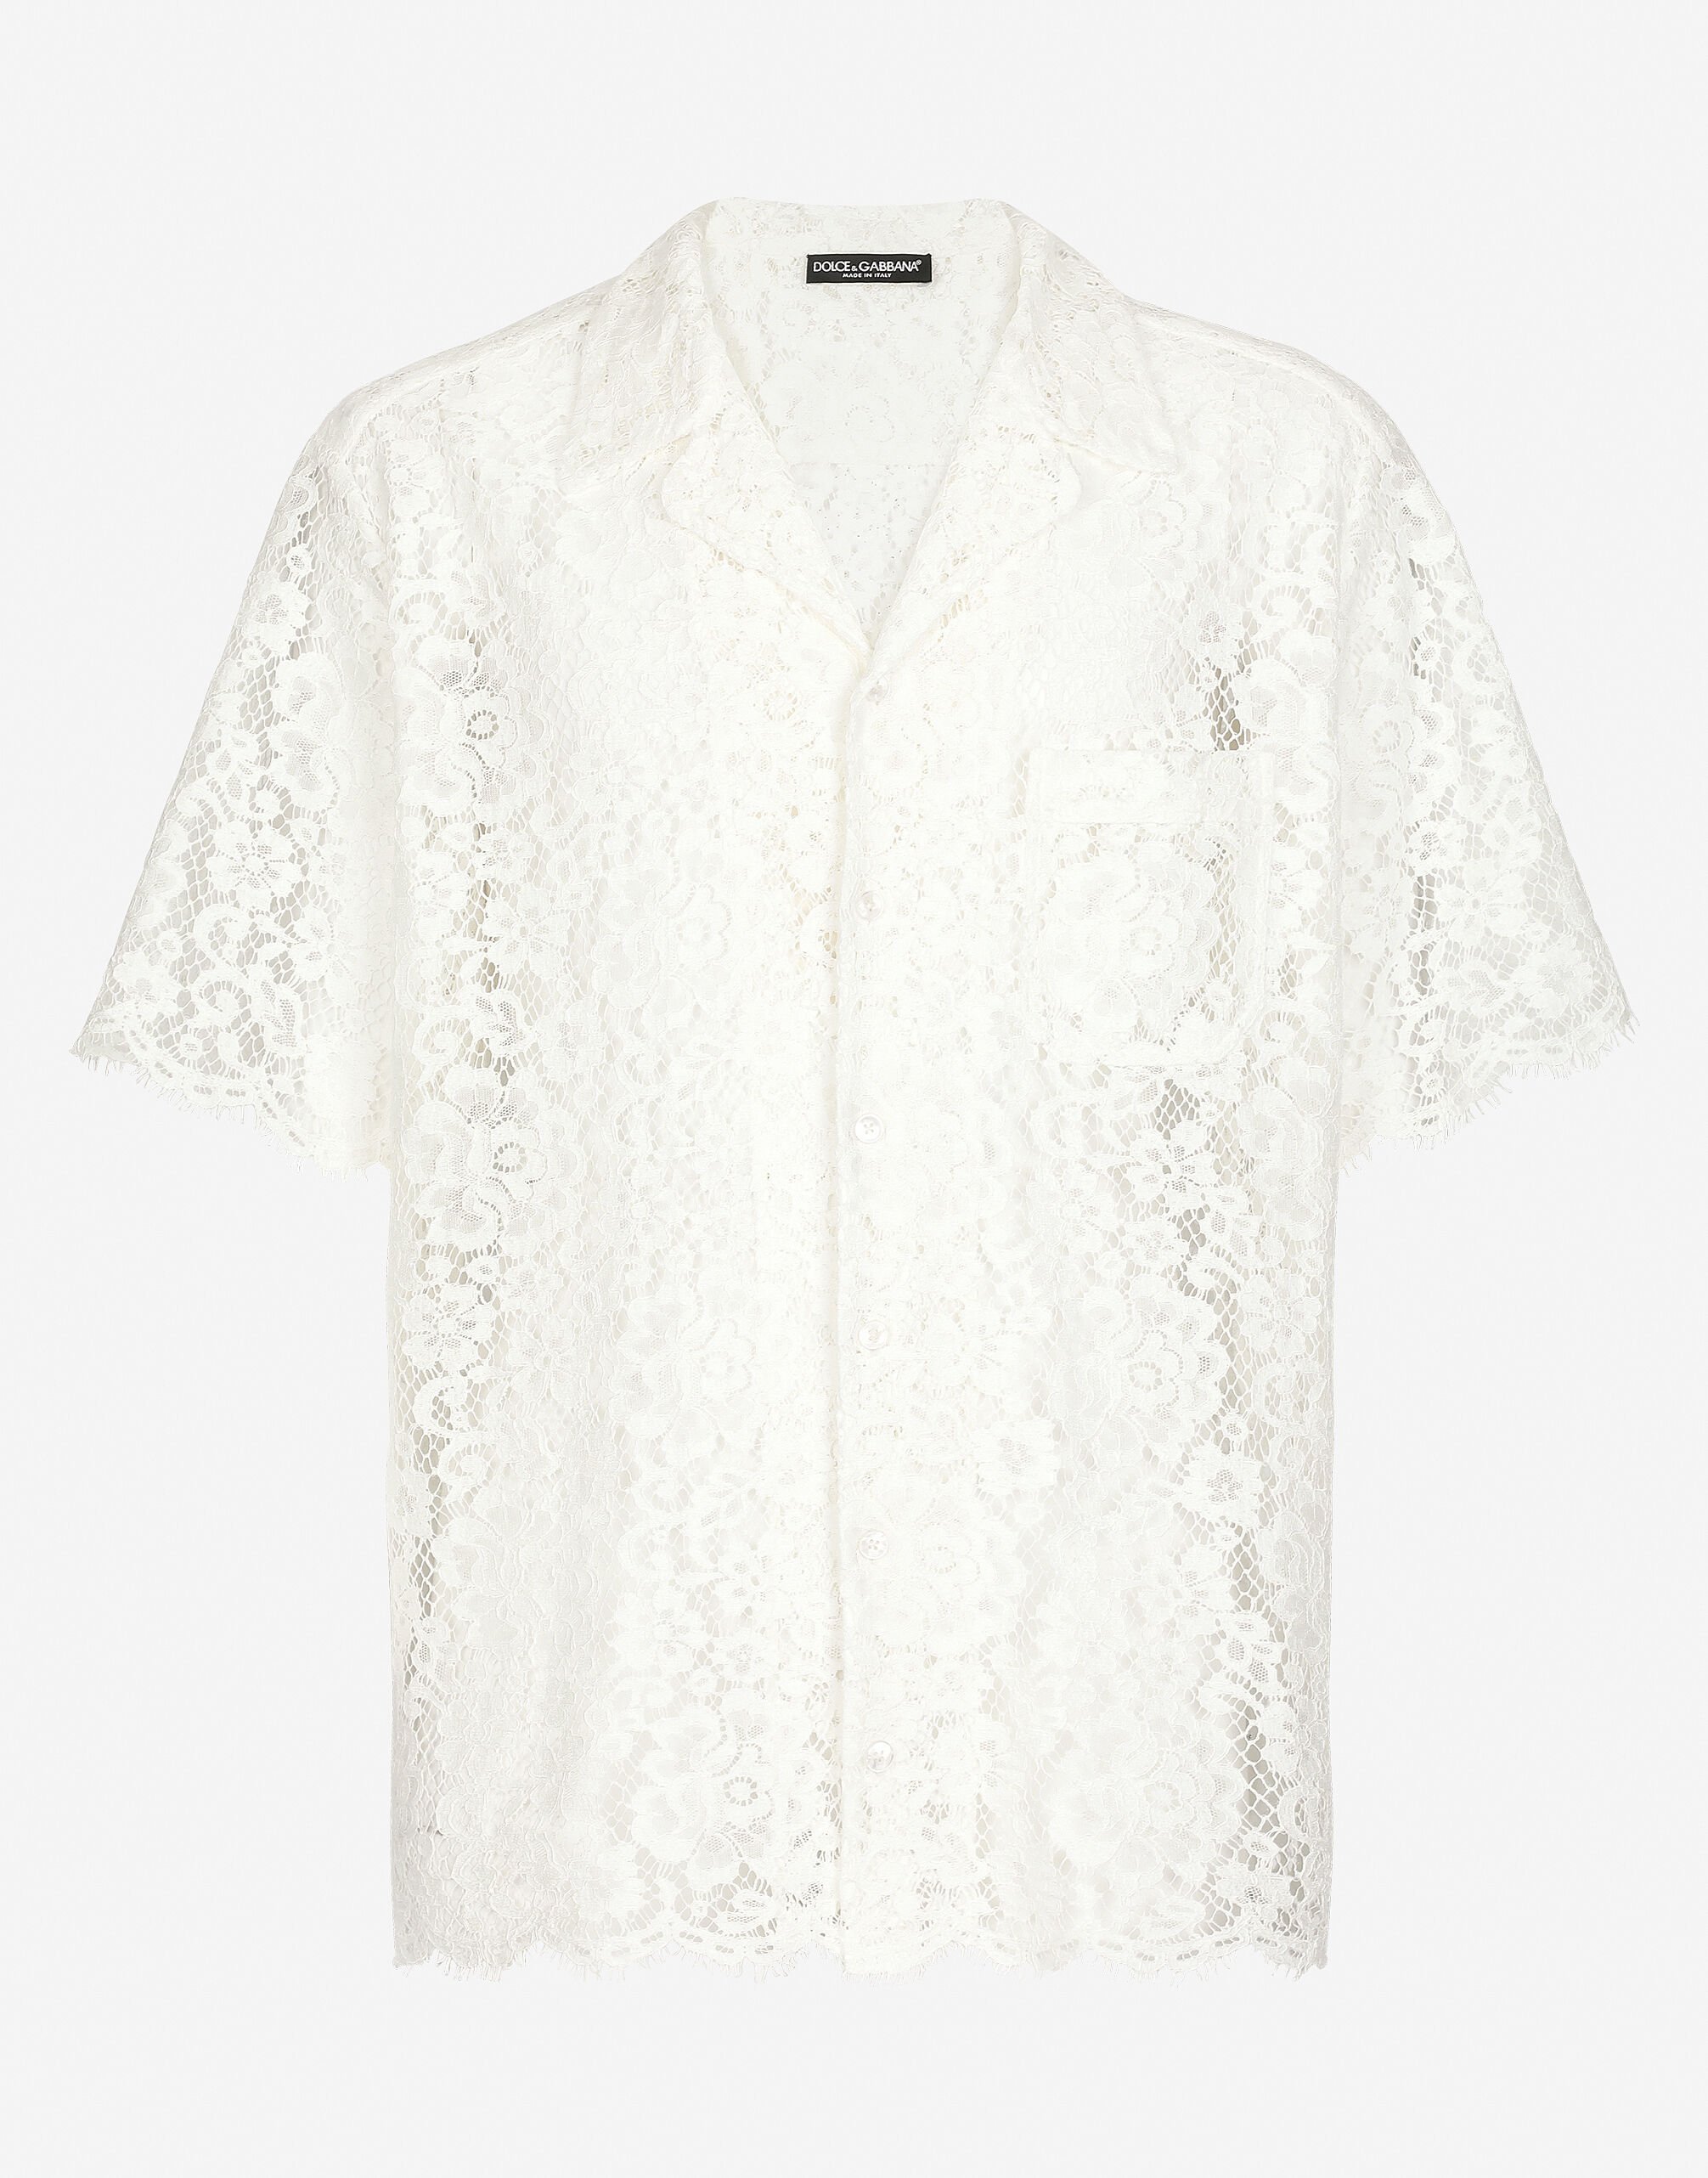 Dolce & Gabbana Lace Hawaiian shirt White G8PN9TG7M8F